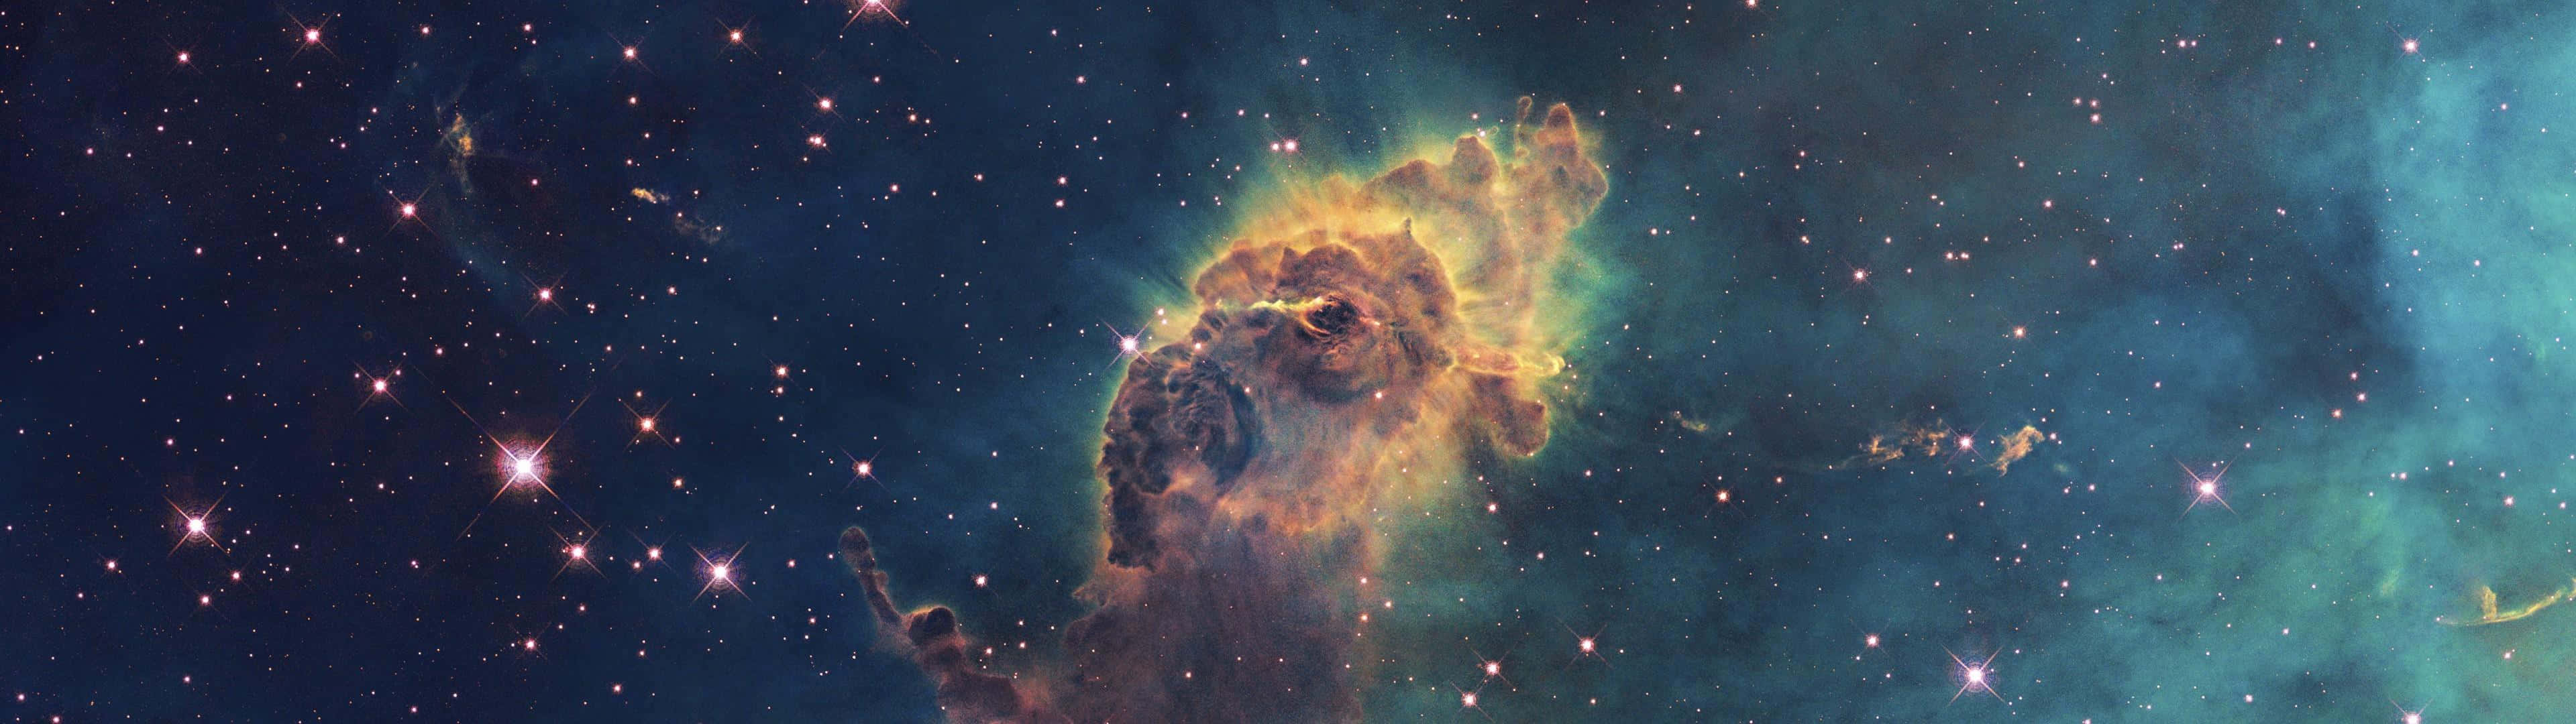 Enrymdscen Med En Nebulosa Och Stjärnor Wallpaper